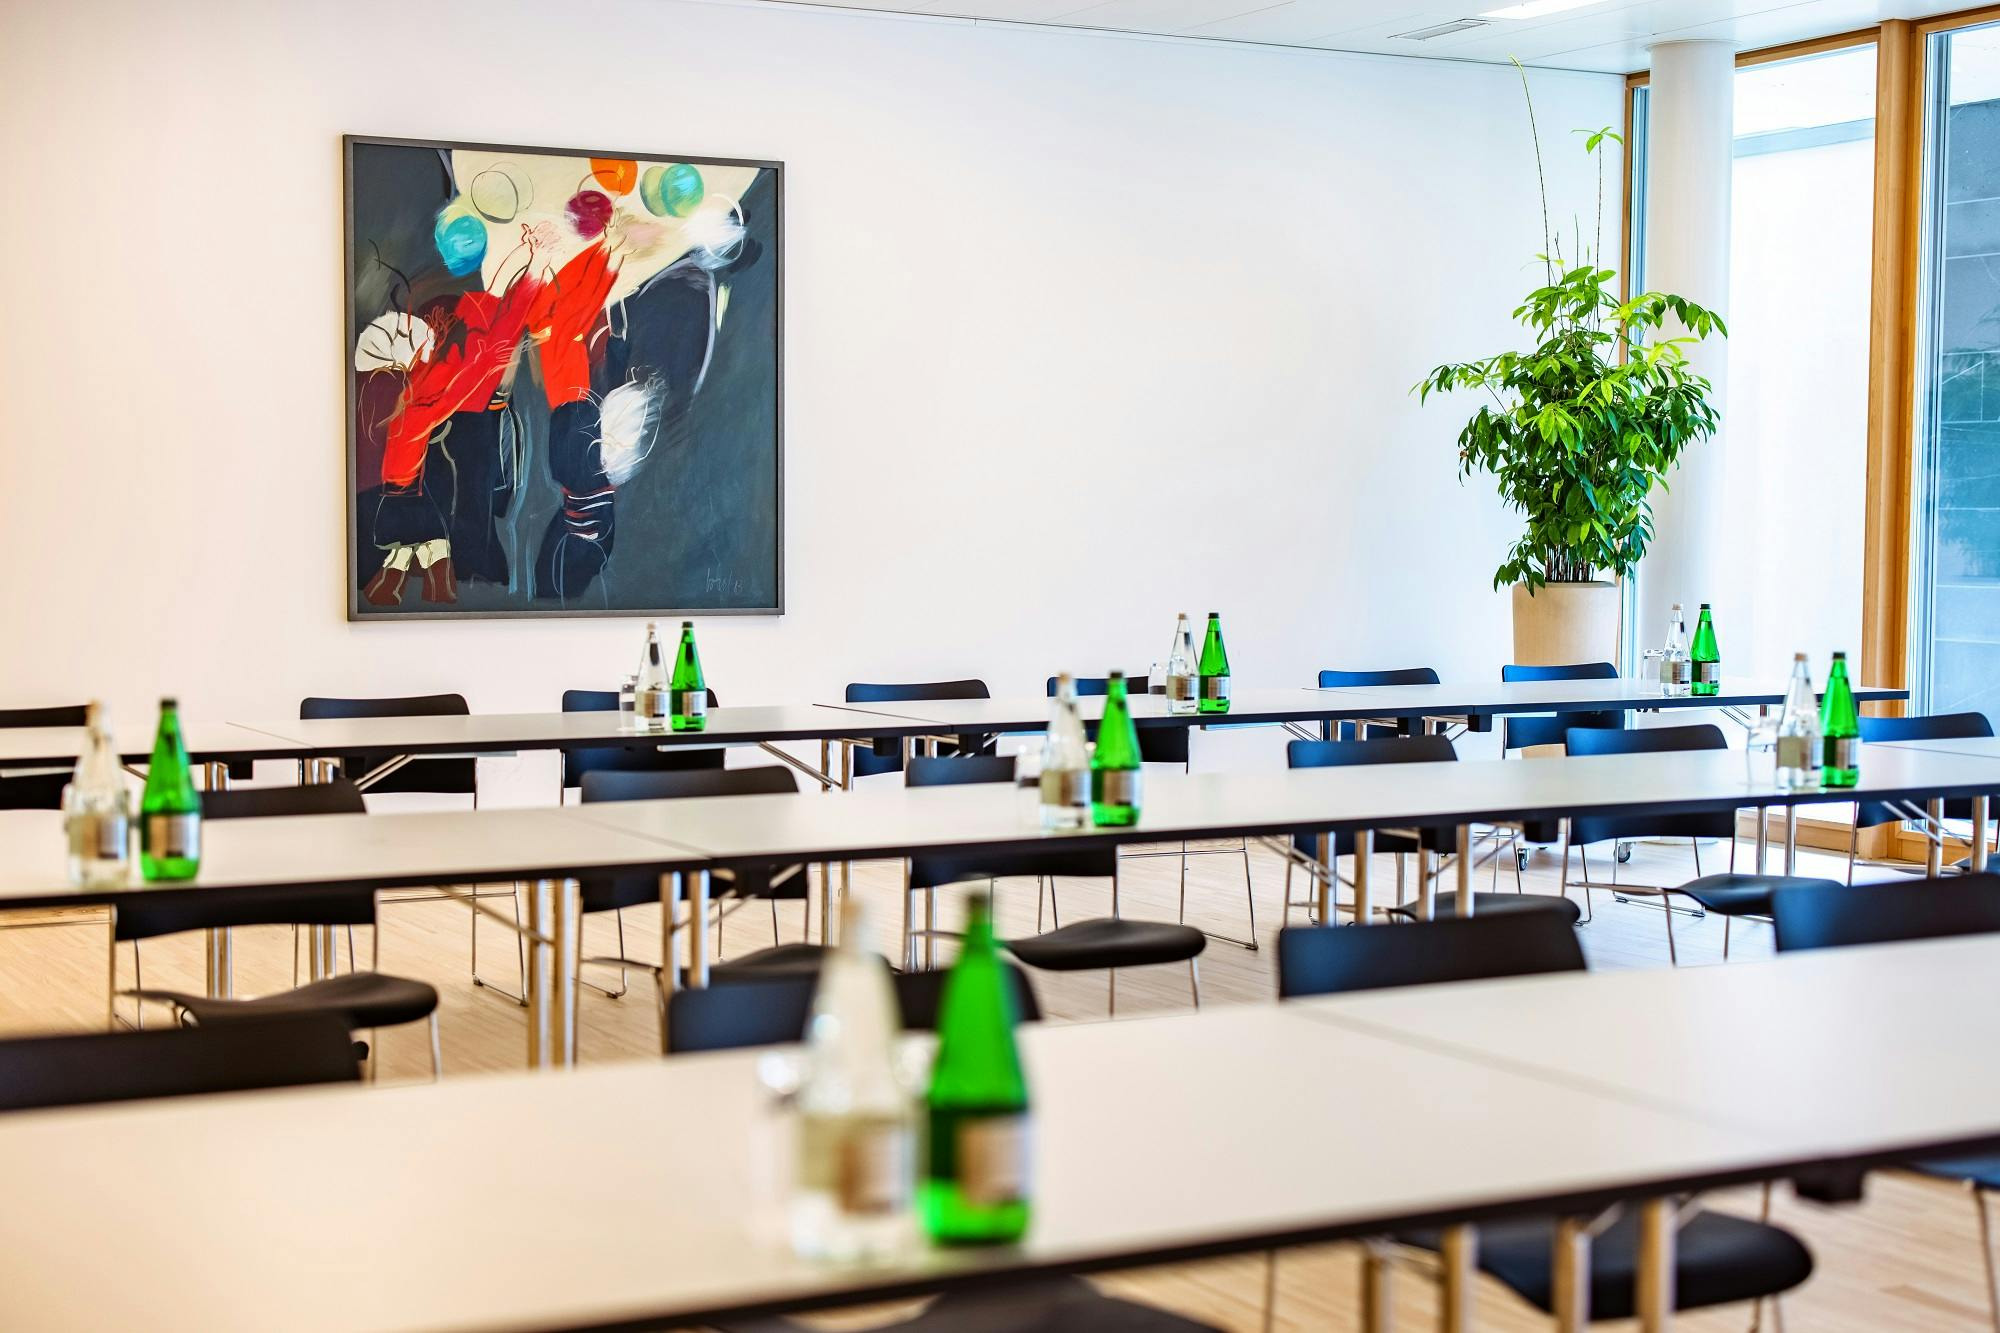 Moderner Besprechungsraum mit Tischen, Stühlen und grünen Wasserflaschen, dekoriert mit einem großen Gemälde und einer Zimmerpflanze.